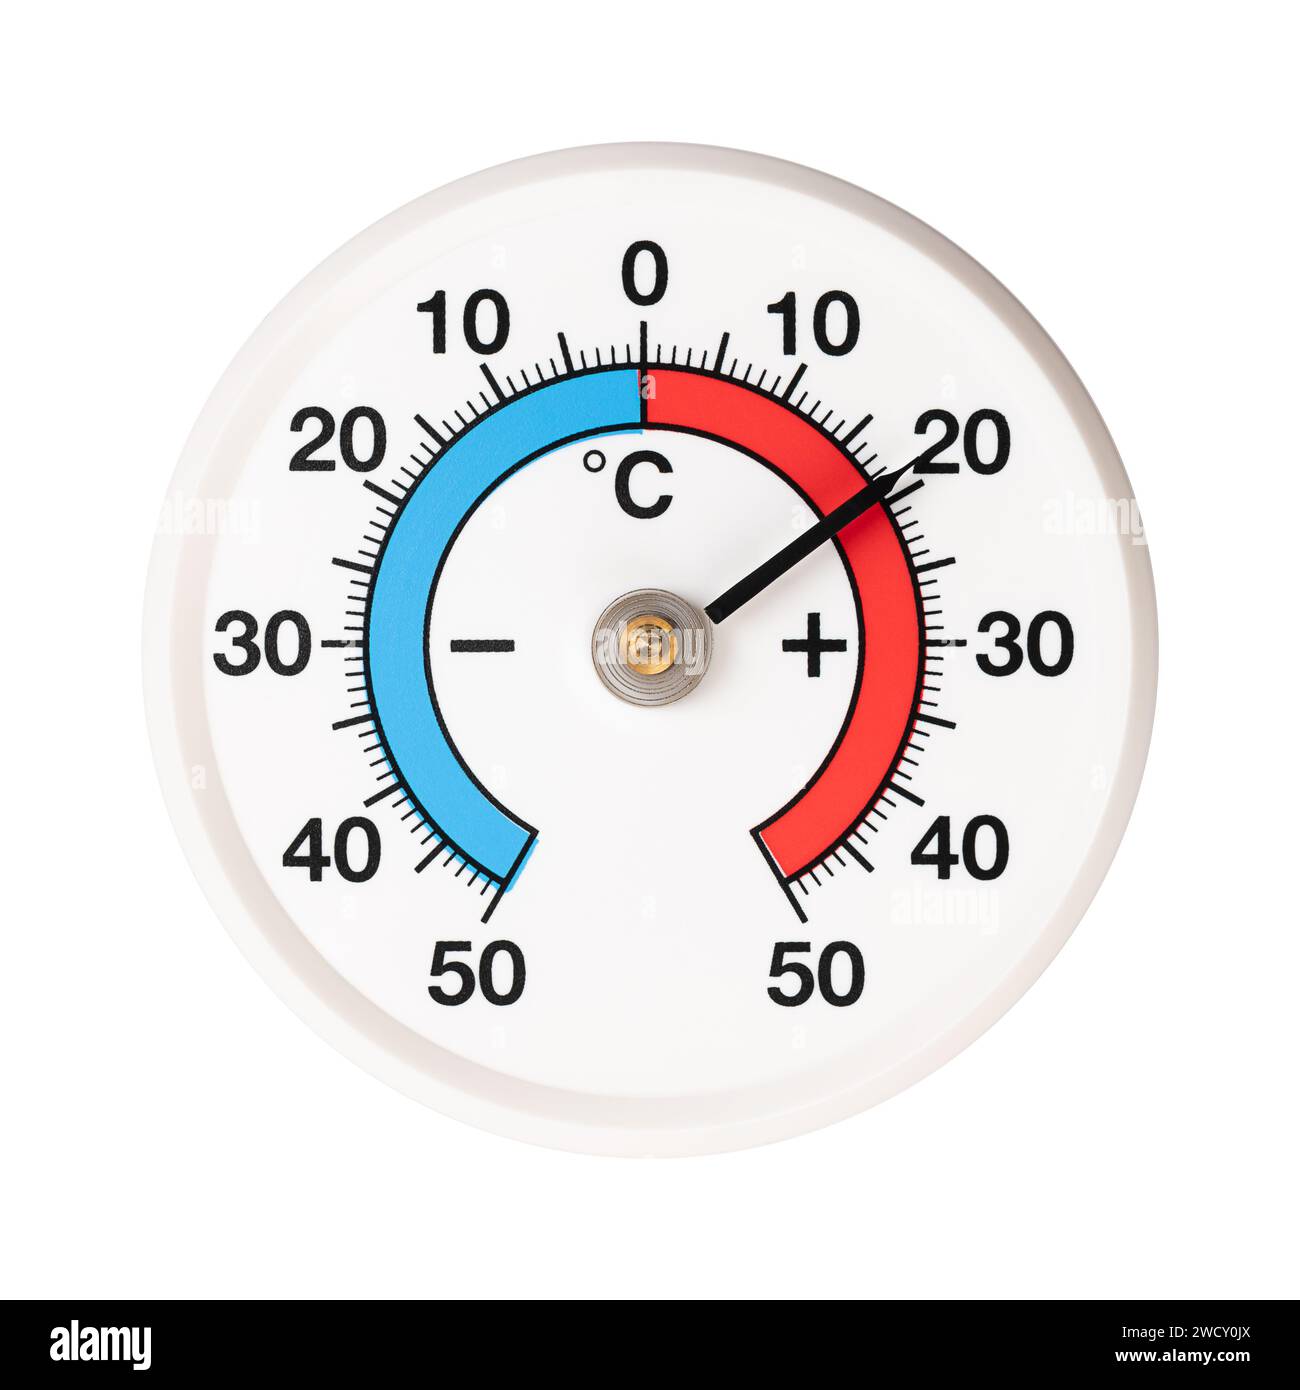 Thermomètre bimétallique à bande spiralée, avec graduation en degrés Celsius. Les changements de température dilatent ou diminuent les deux bandes métalliques différemment. Banque D'Images